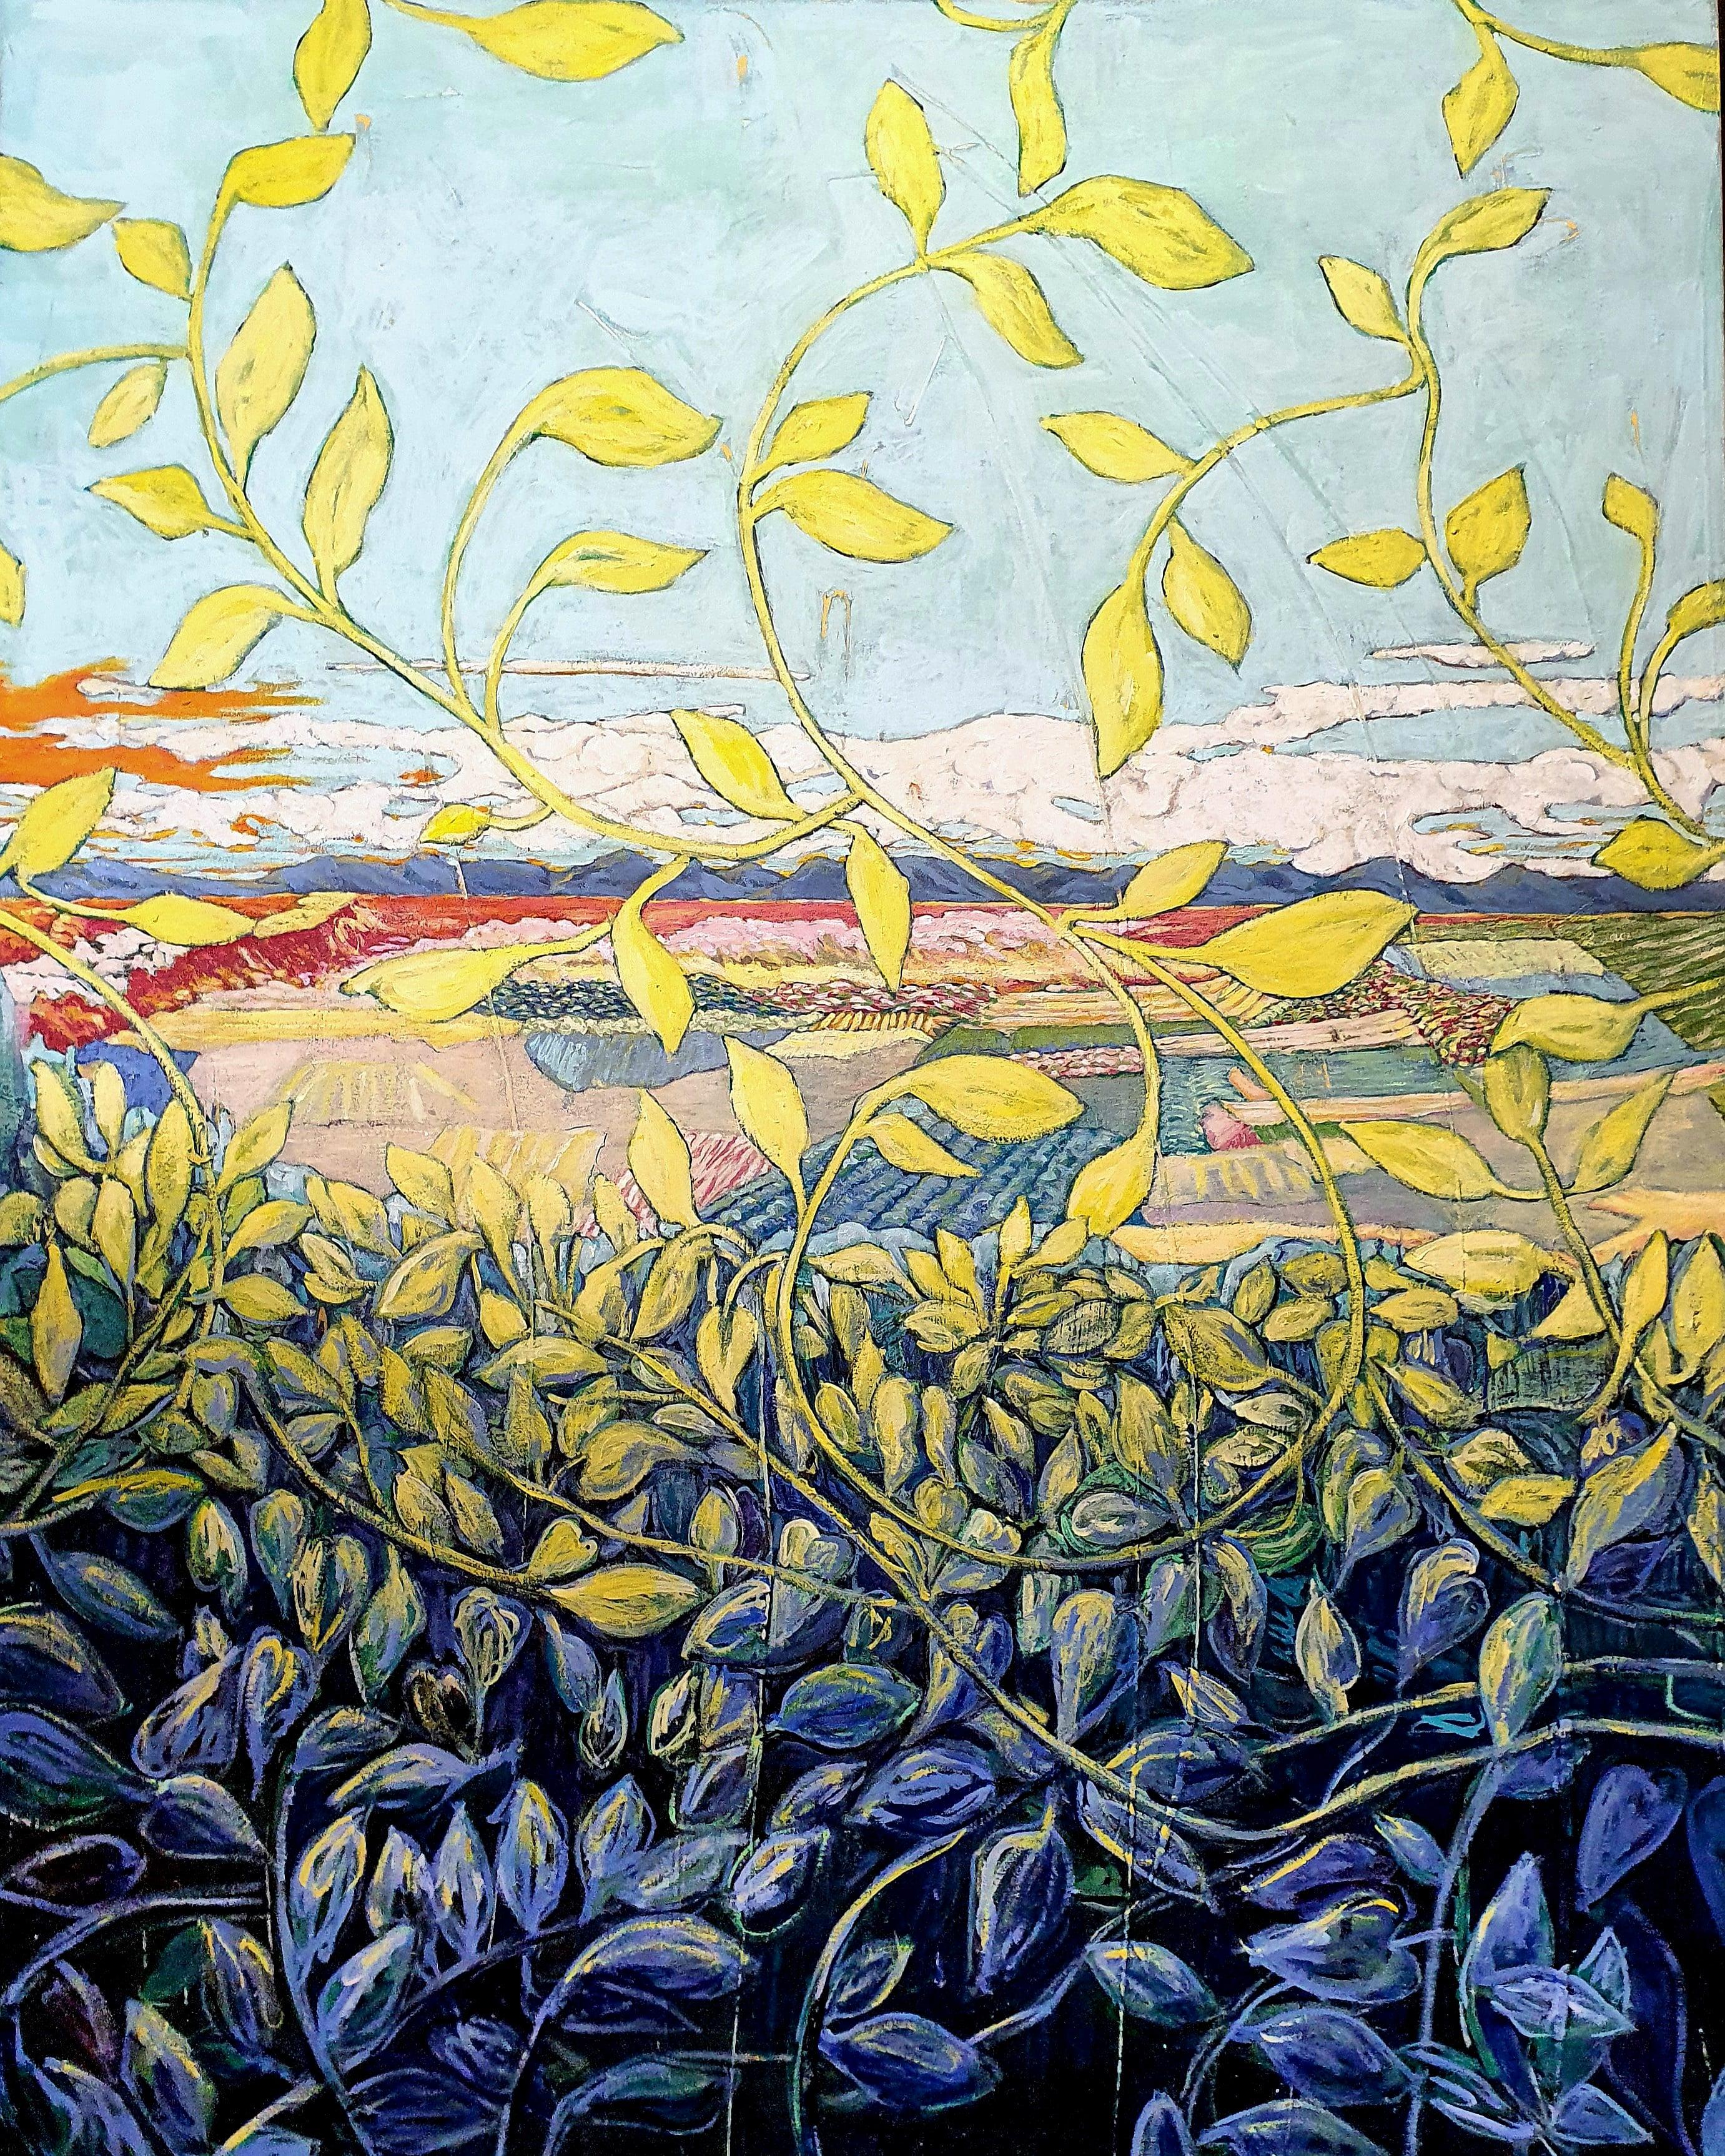 Abstract Painting Claire Denarie-Soffietti - Peinture de paysage exotique colorée « Through the Grapevine » (A travers la vigne)